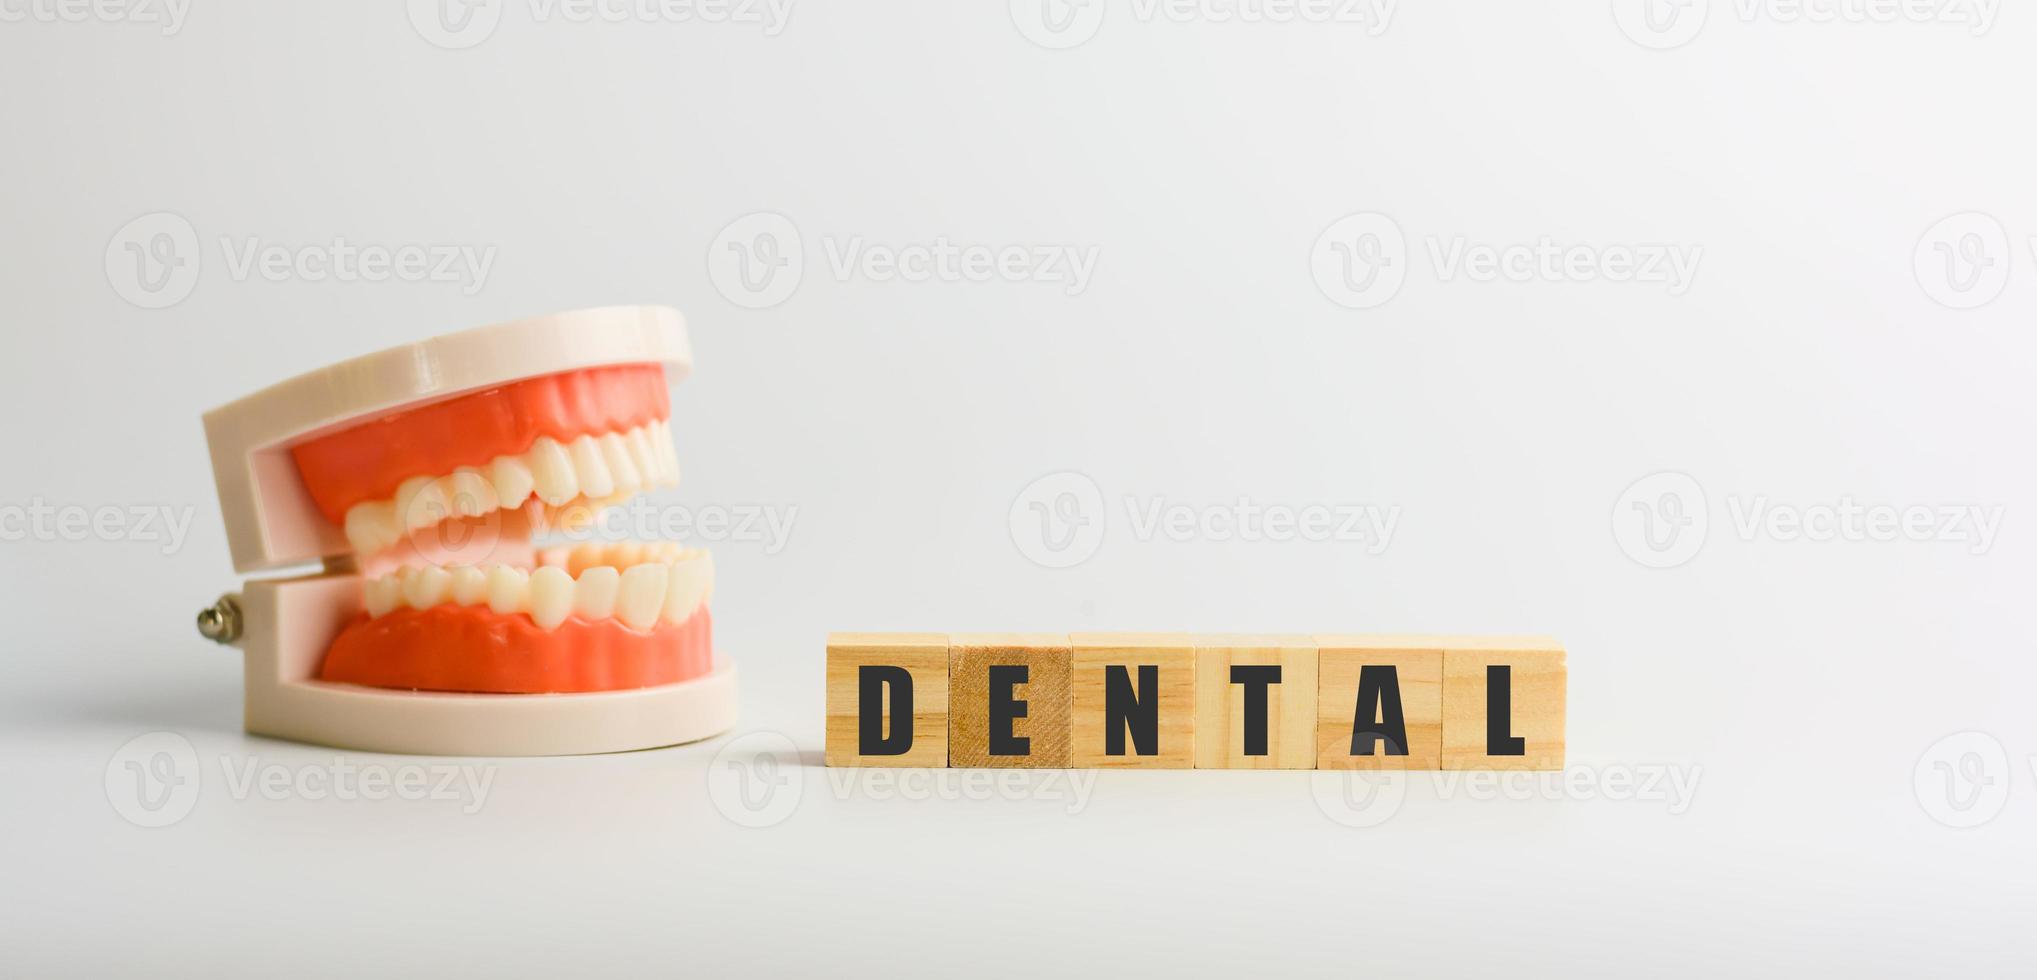 dental på träblock med modelltänder. medicinska och dentala koncept. foto